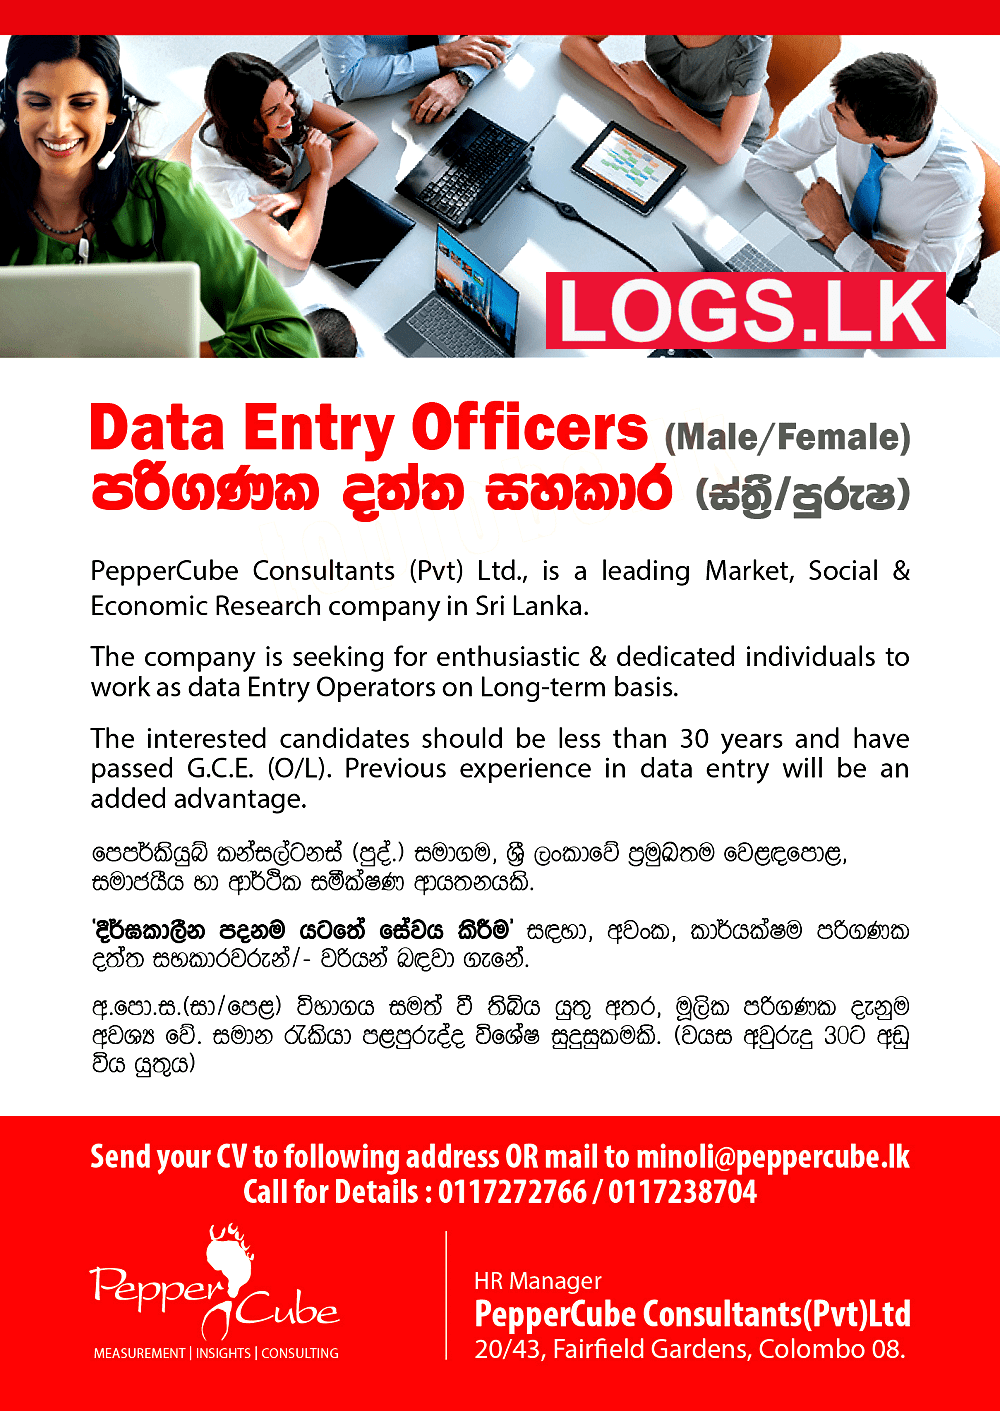 Data Entry Officers Vacancies at Pepper Cube Consultants (Pvt) Ltd Job Vacancies